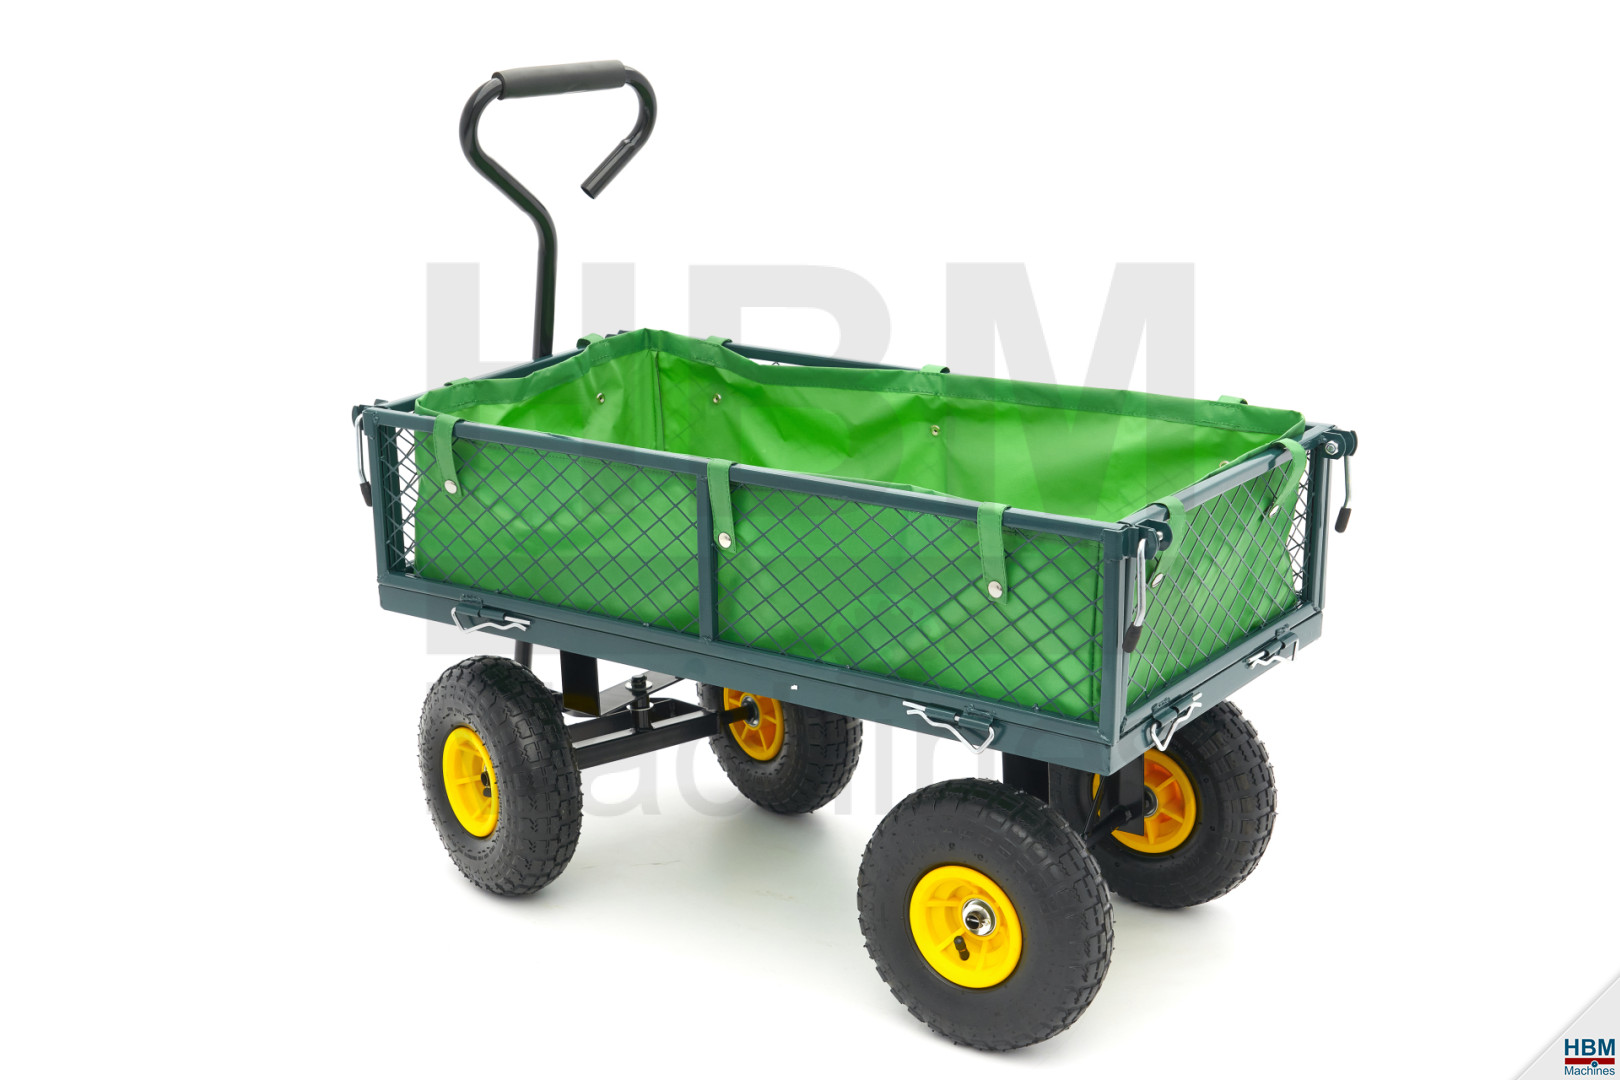 HBM Chariot de 100 kg, chariot de borne, chariot de jardin avec une boîte de  86 x 46 x 19 cm et un sac en toile.